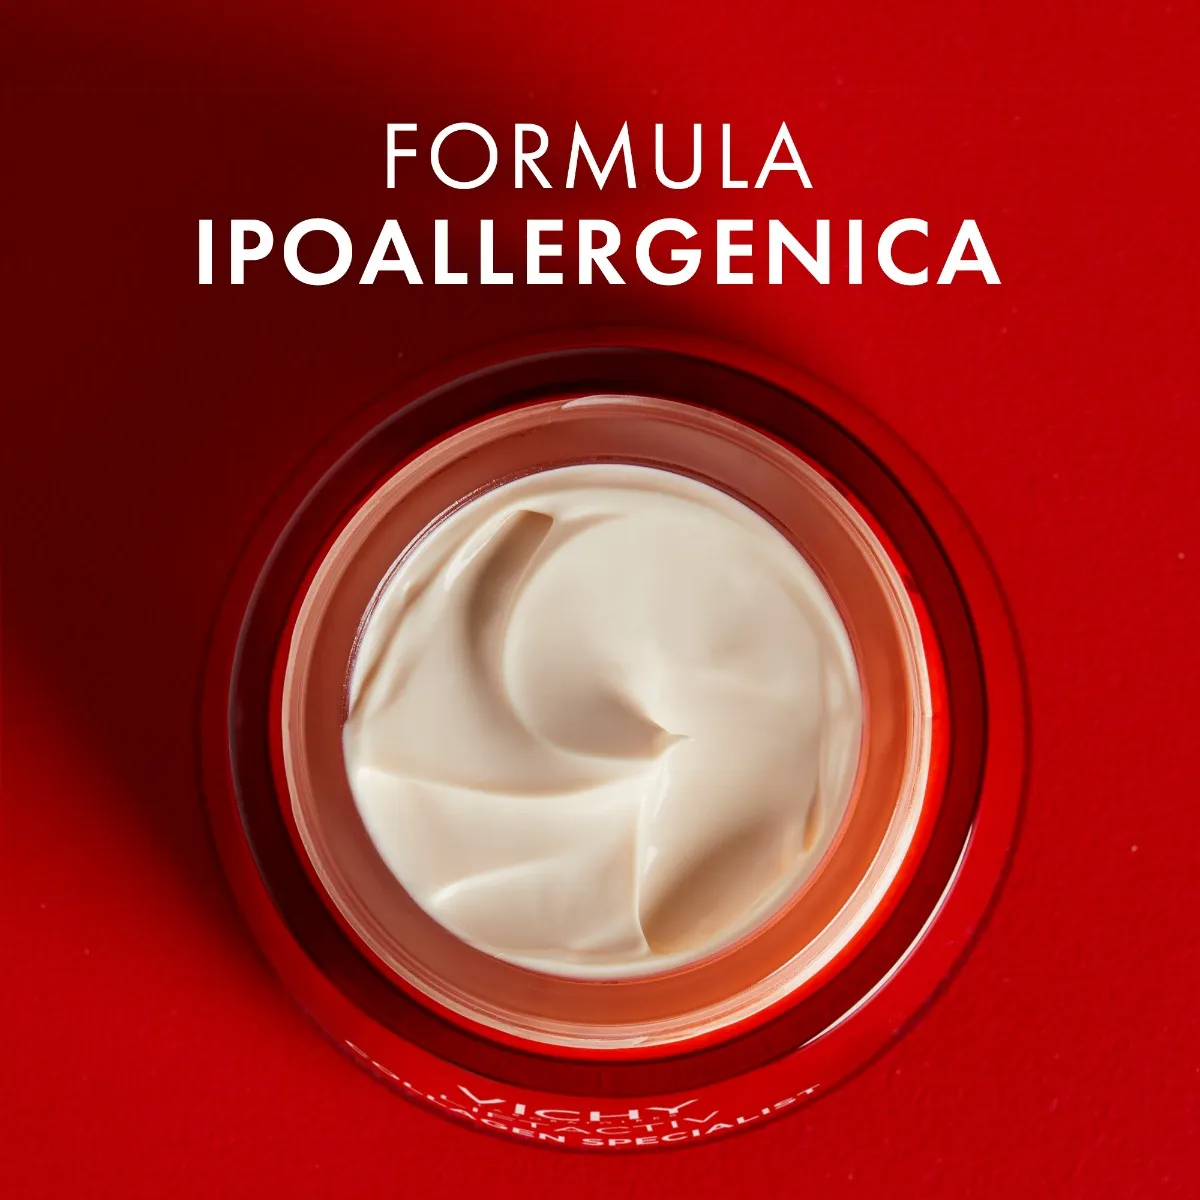 Vichy Liftactiv Collagen Specialist Crema Giorno 50 ml Anti-eta'